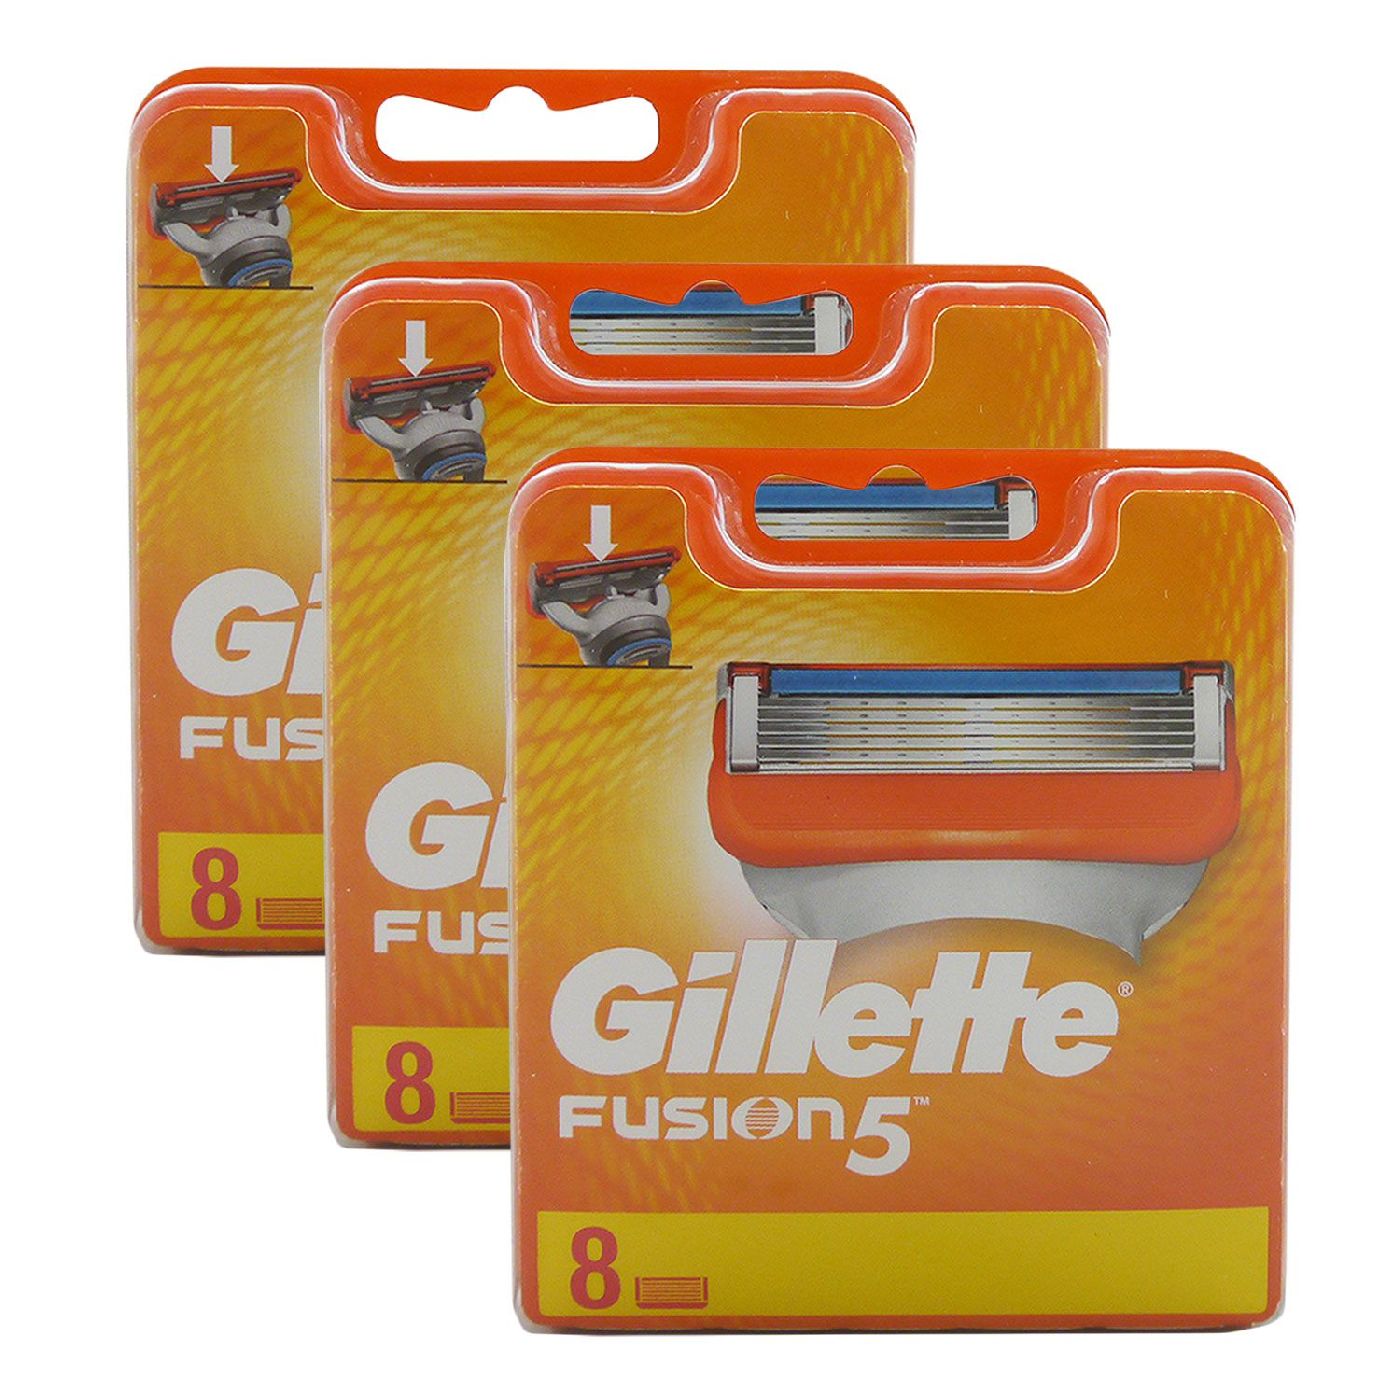 24 Gillette Fusion ProGlide Rasierklingen Klingen Set Gilette 3x 8er Pack OVP 